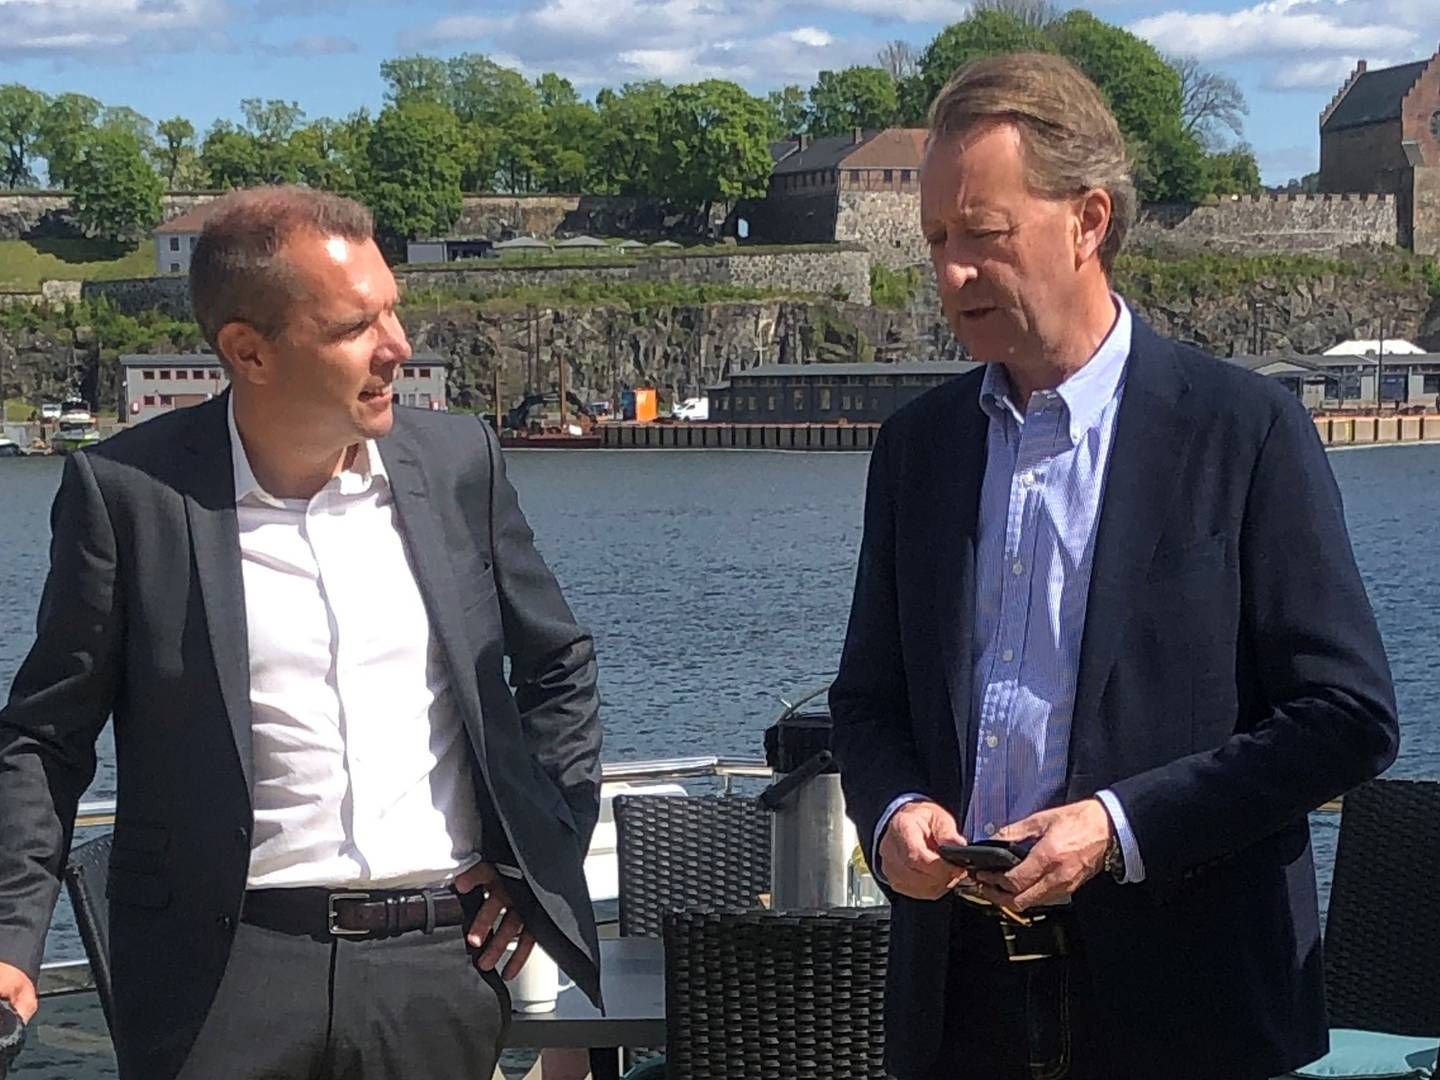 CEO Steffen Syvertsen (L) joined by investor Bjørn Rune Gjelsten during presentation of Agder Energi's plans to build a battery factory. | Photo: PR / Agder Energi